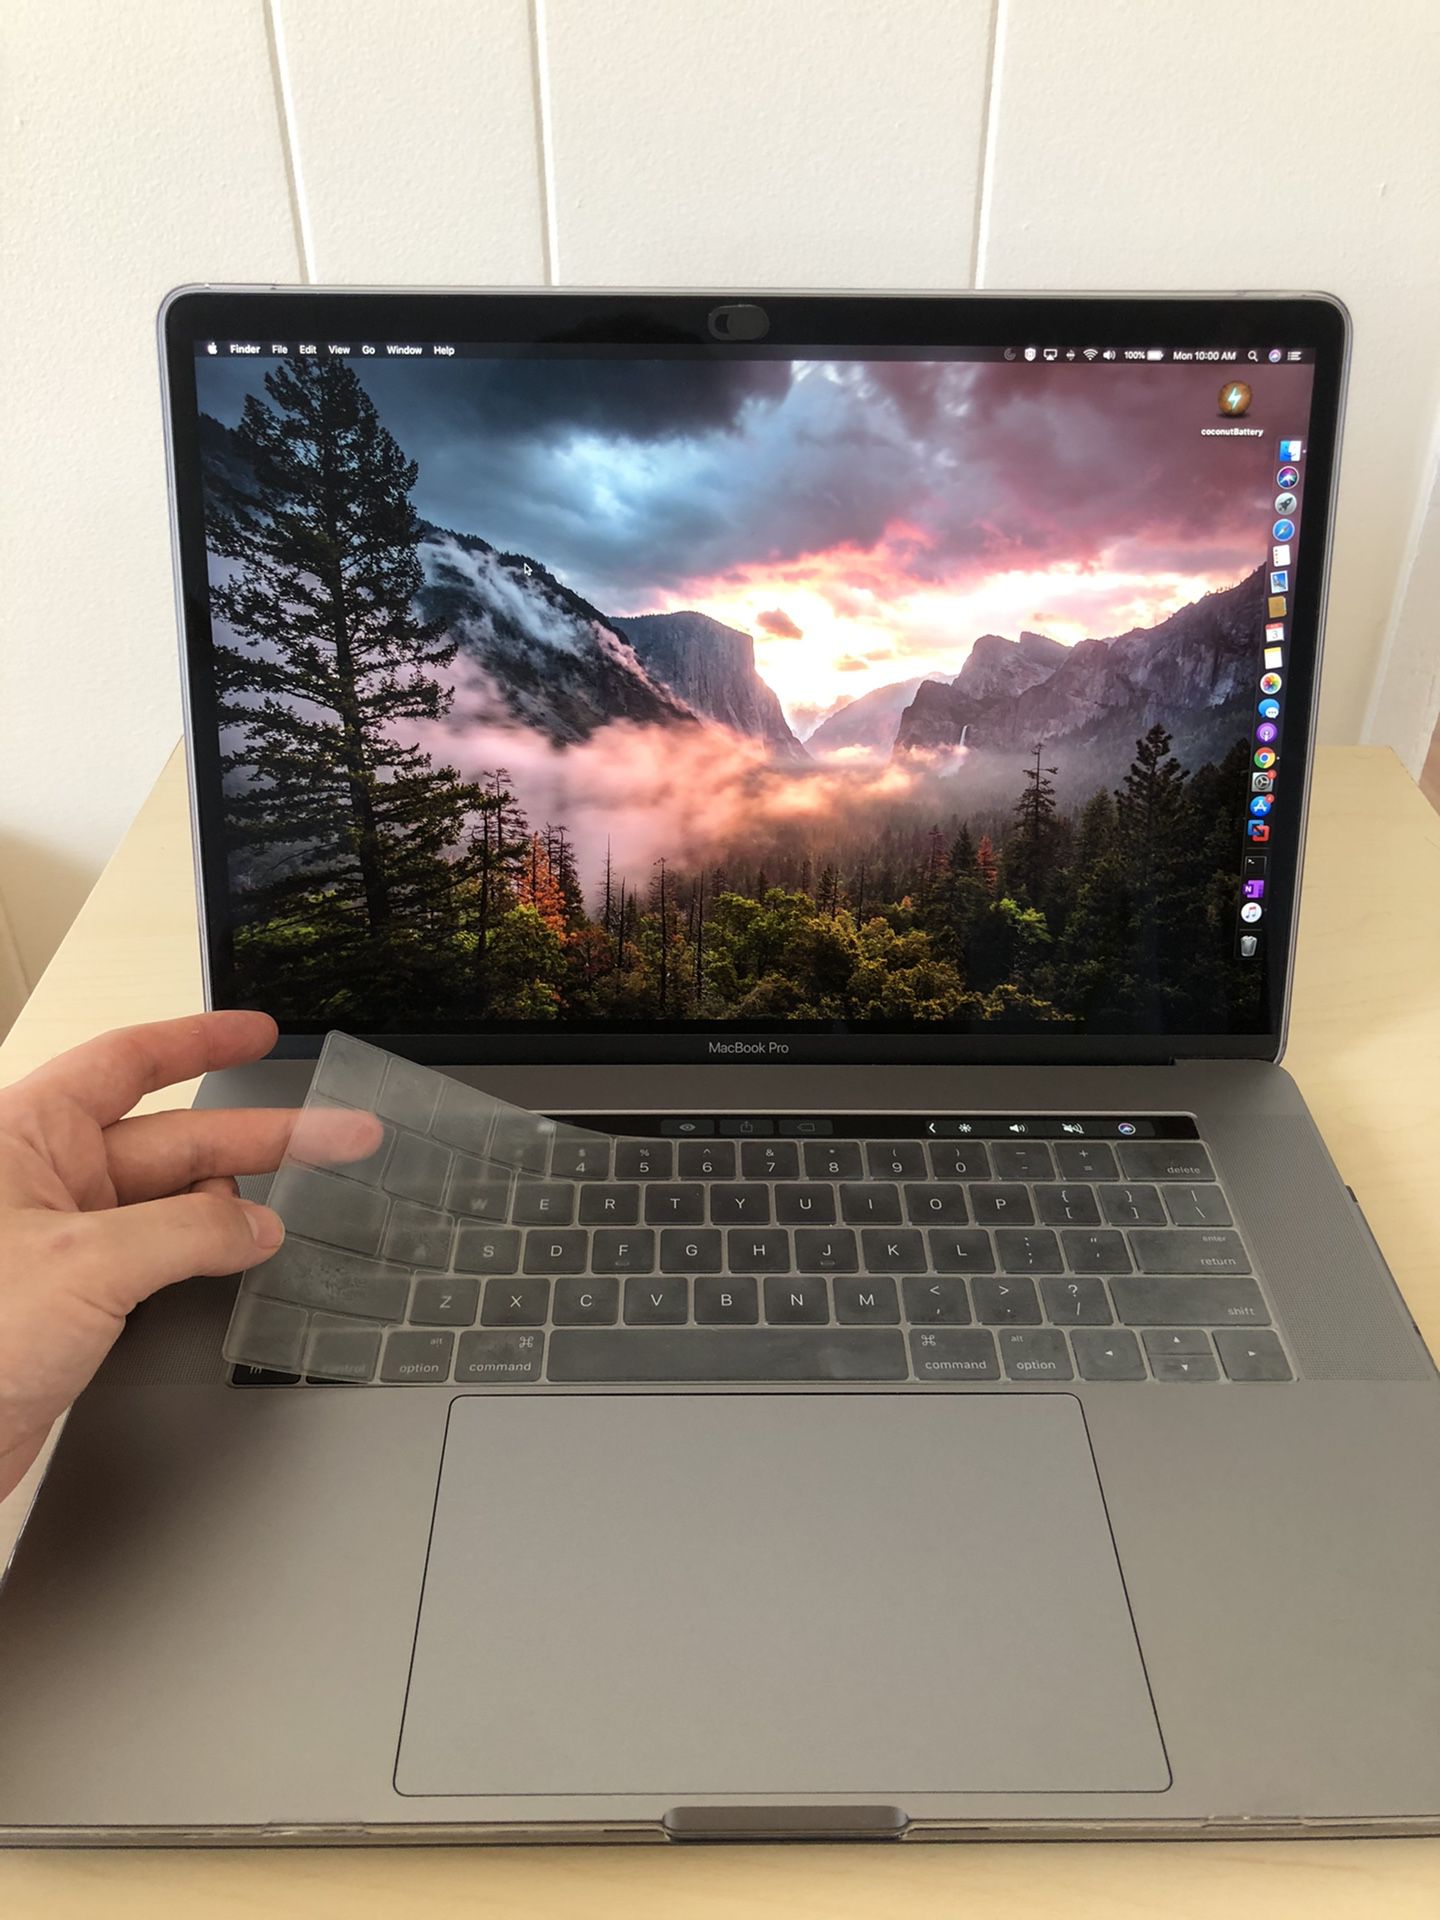 MacBook Pro 15” with touchbar 2.9 GHz i7